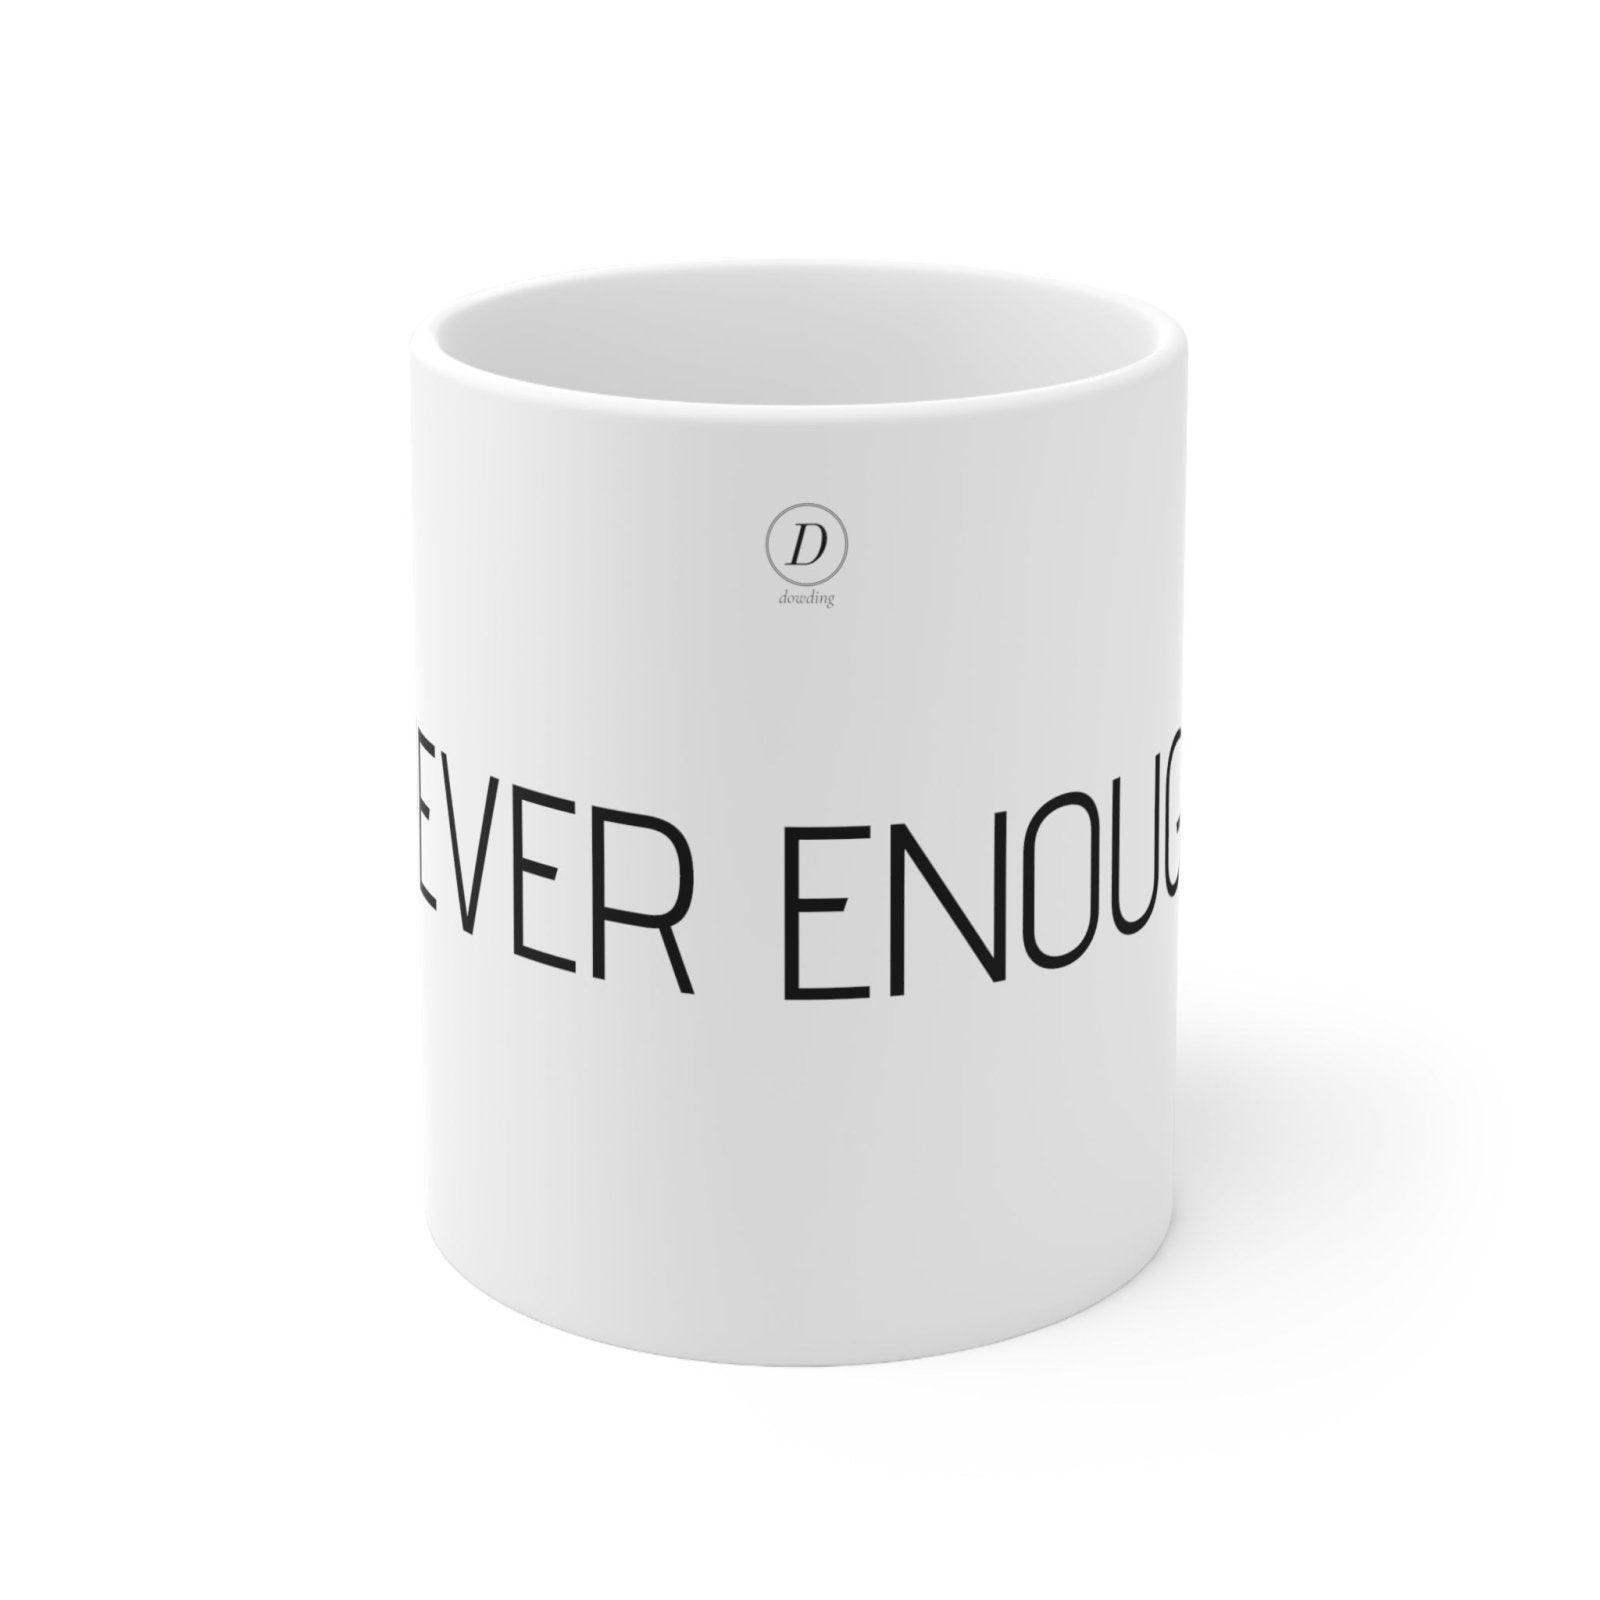 "NEVER ENOUGH" Motivational Ceramic Mug 11oz - Dowding